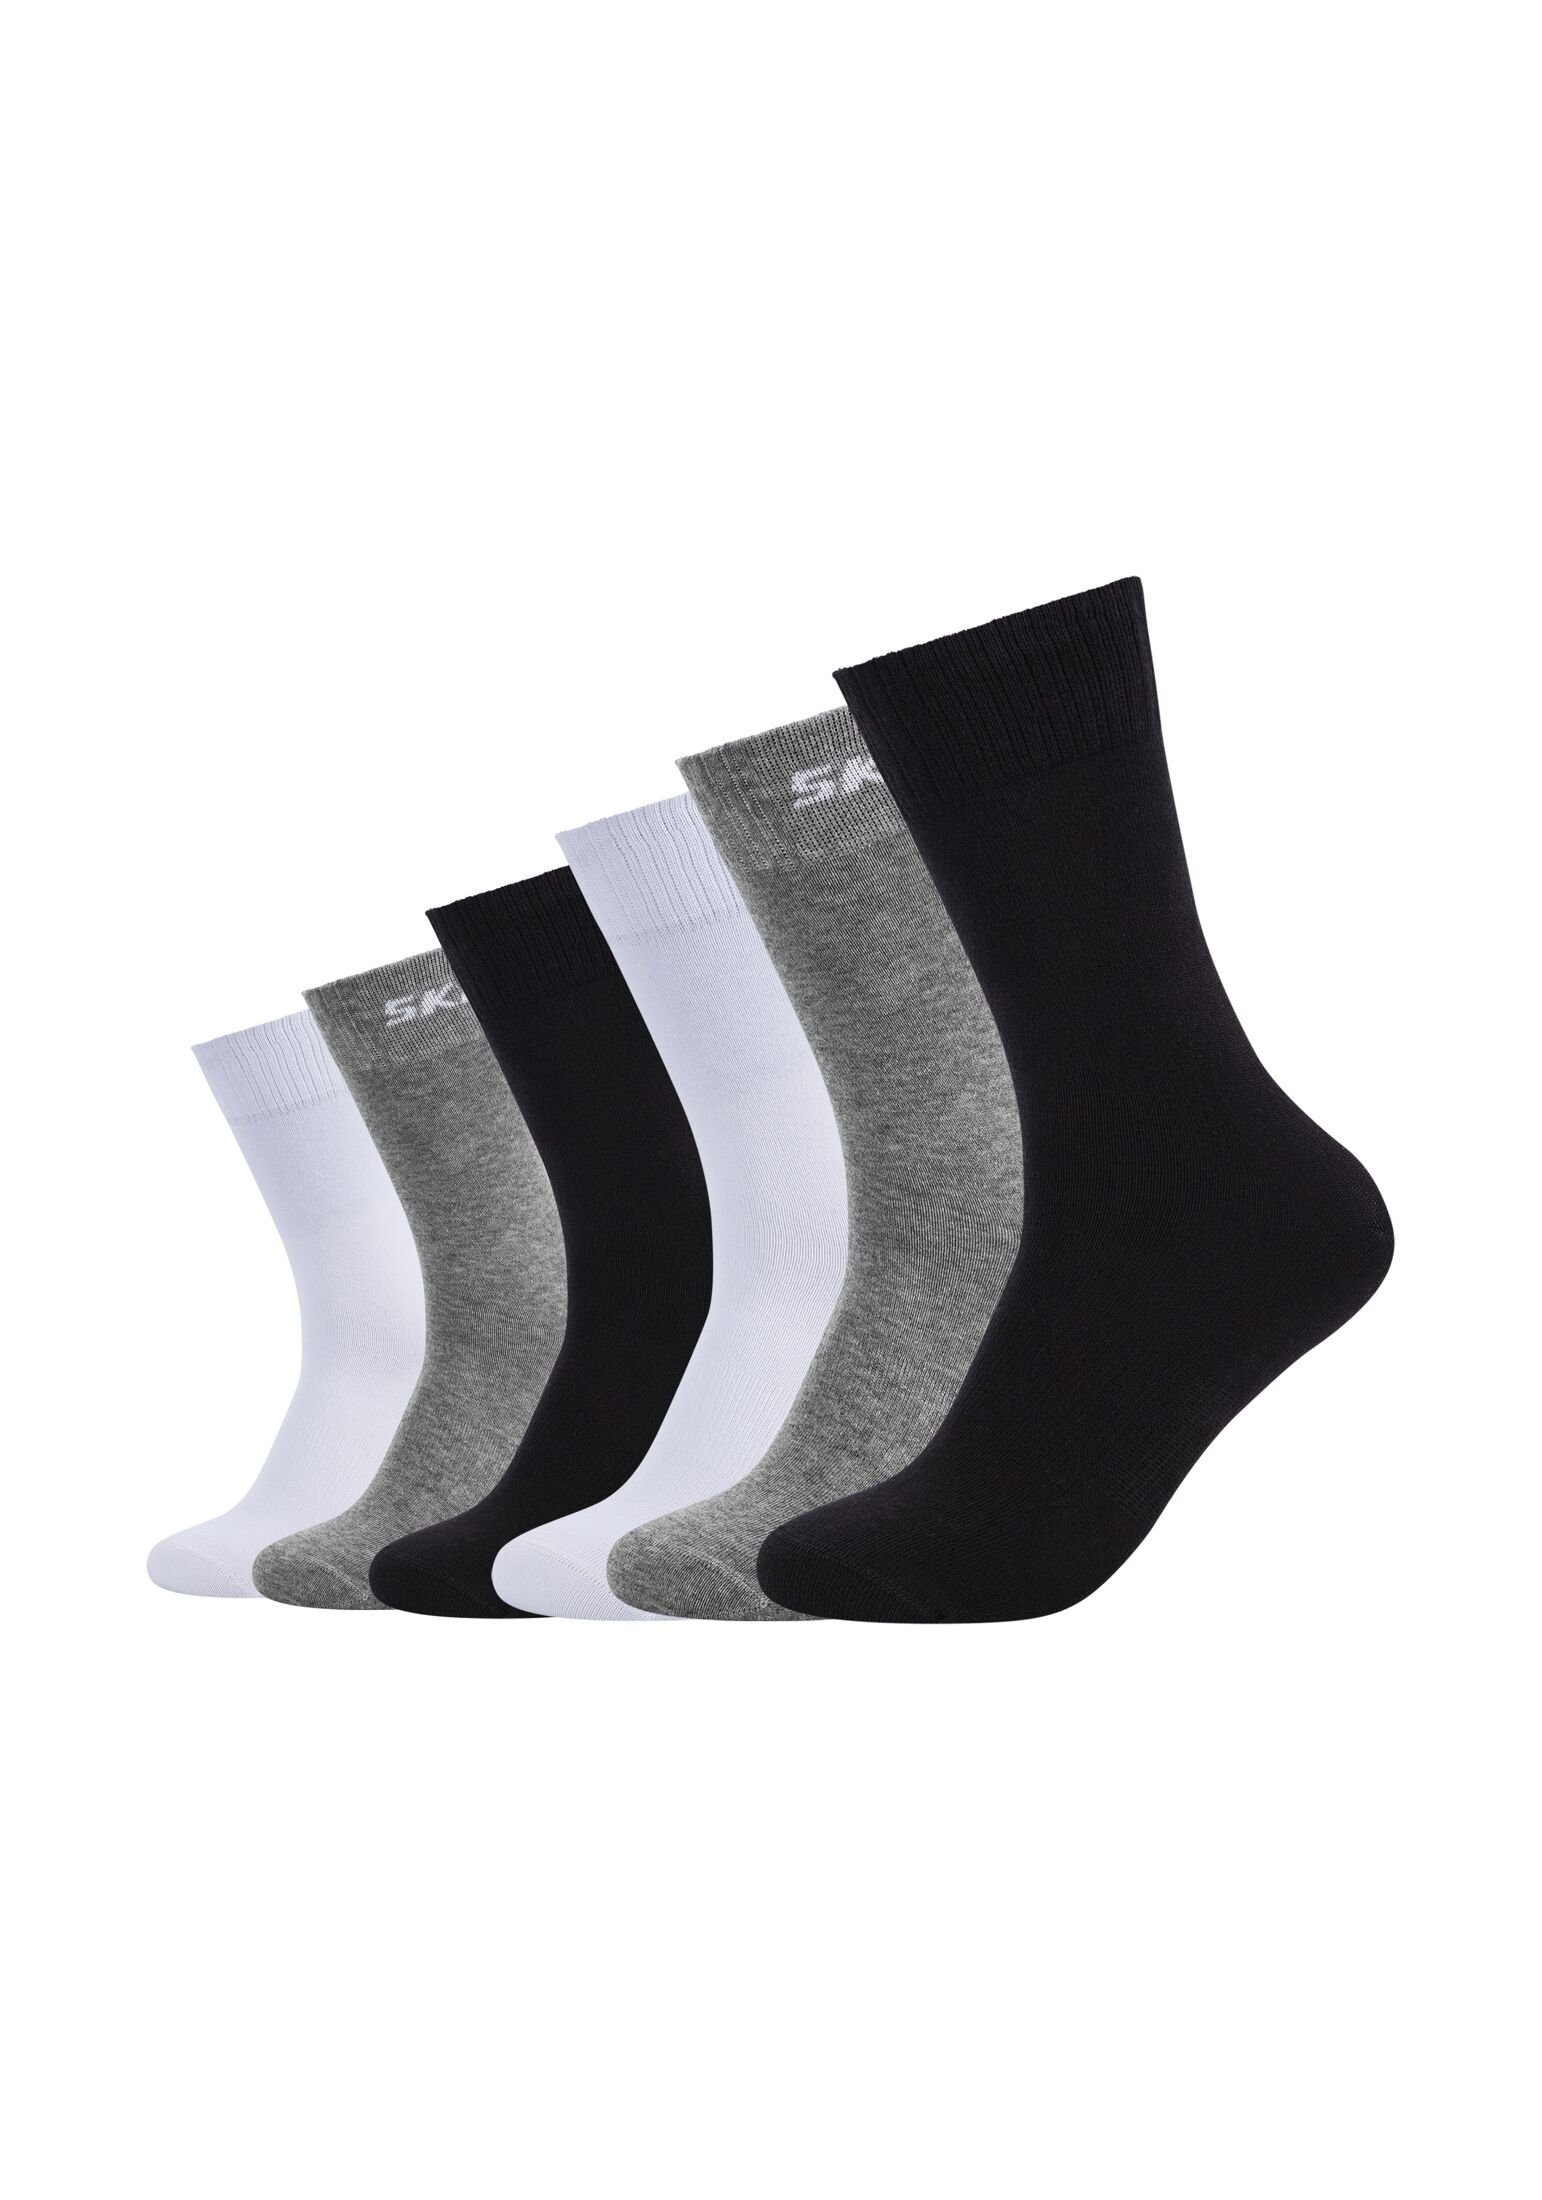 black/grey mix Skechers Socken 6er Socken Pack